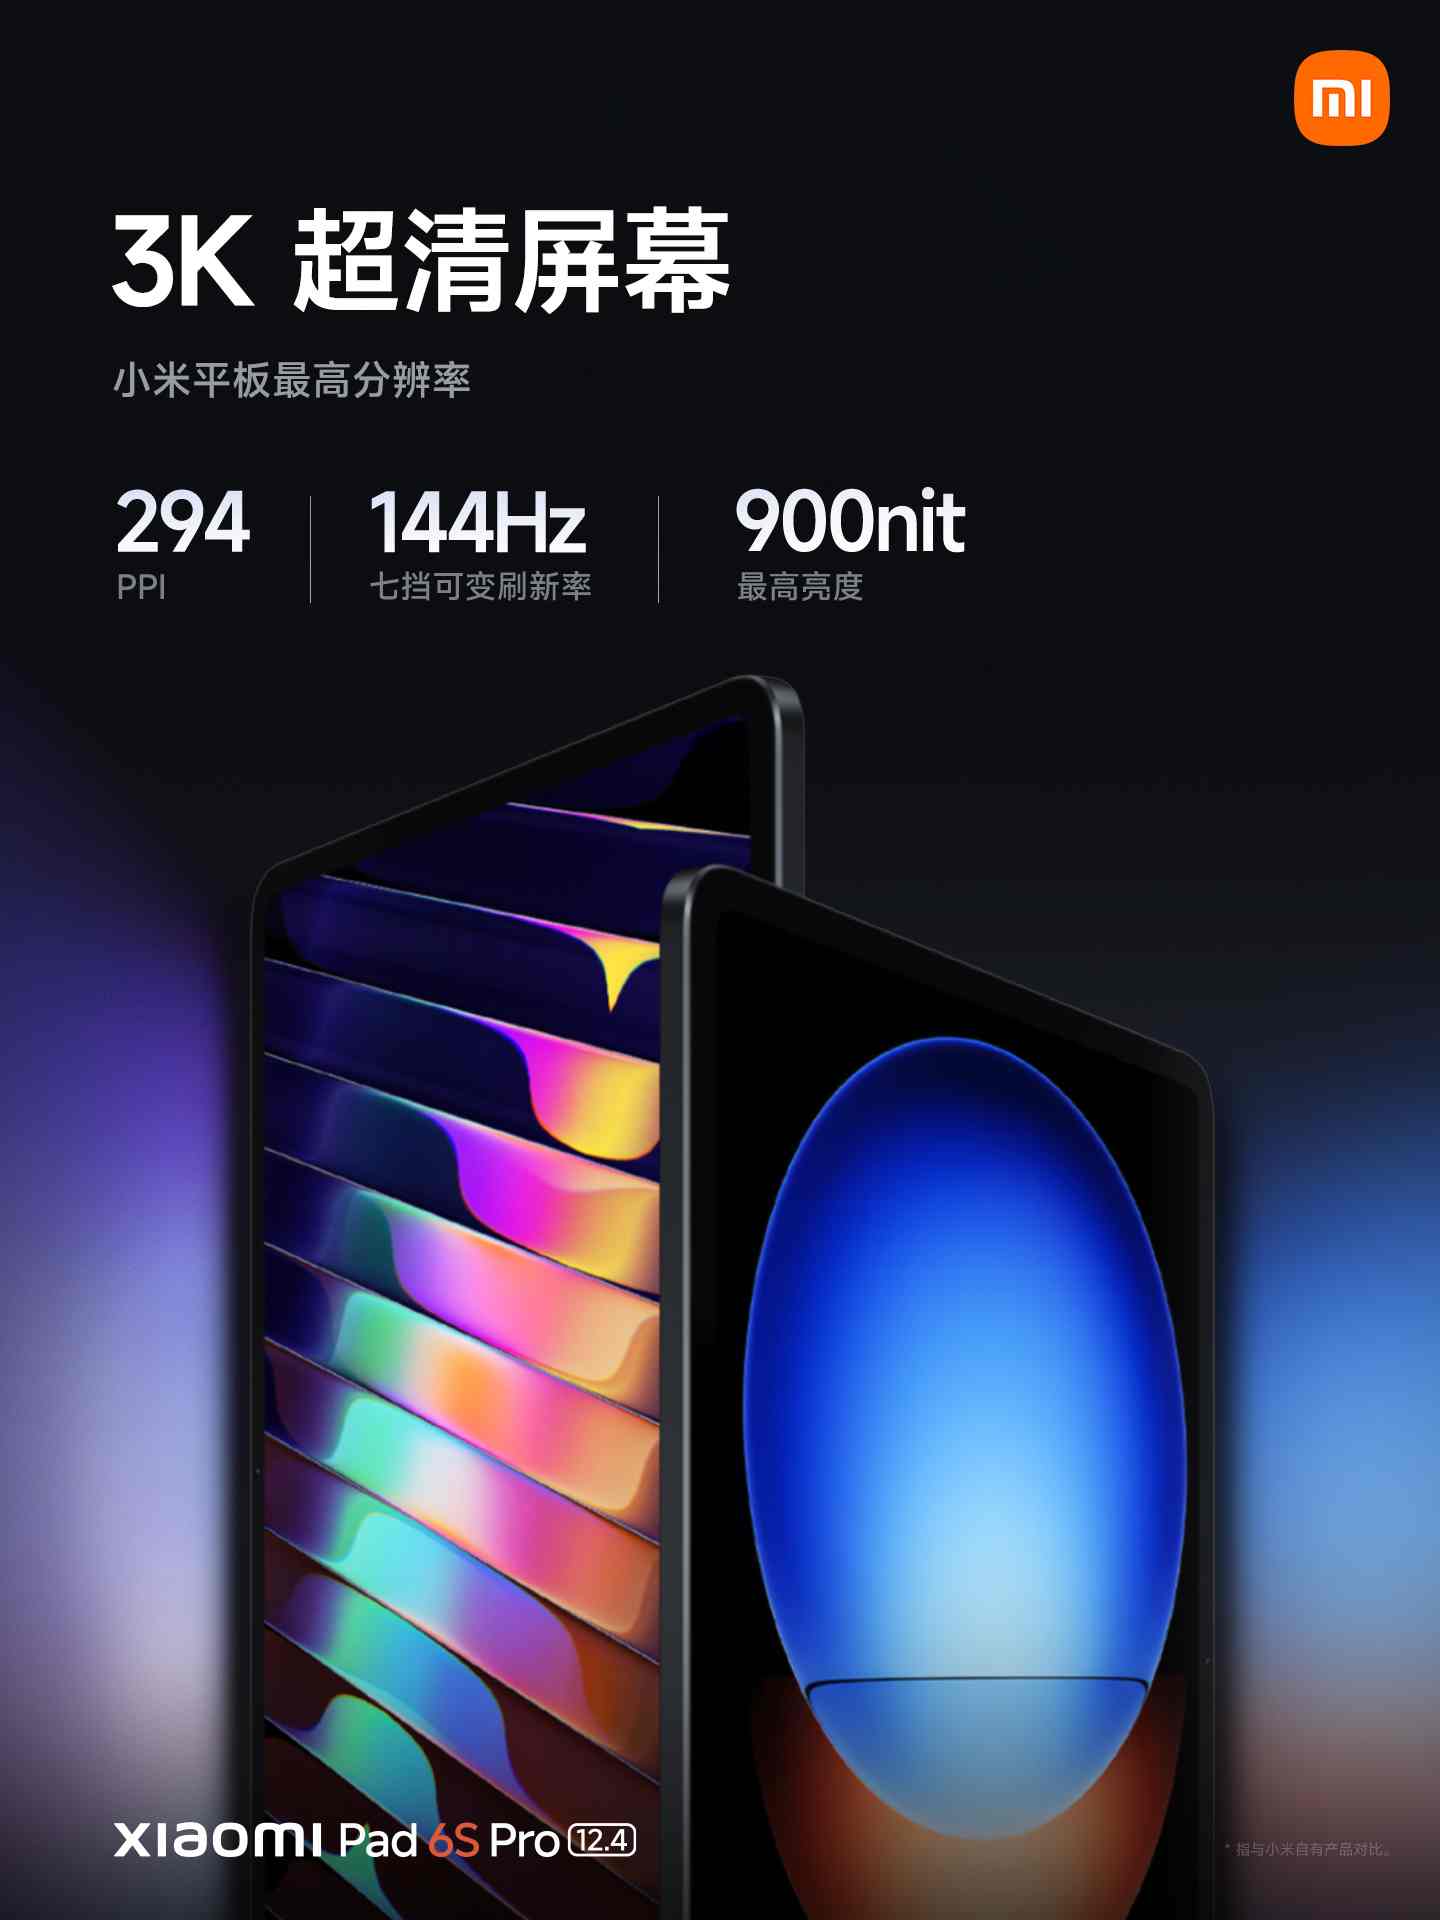 Xiaomi Pad 6S Pro có màn hình độ phân giải 3K